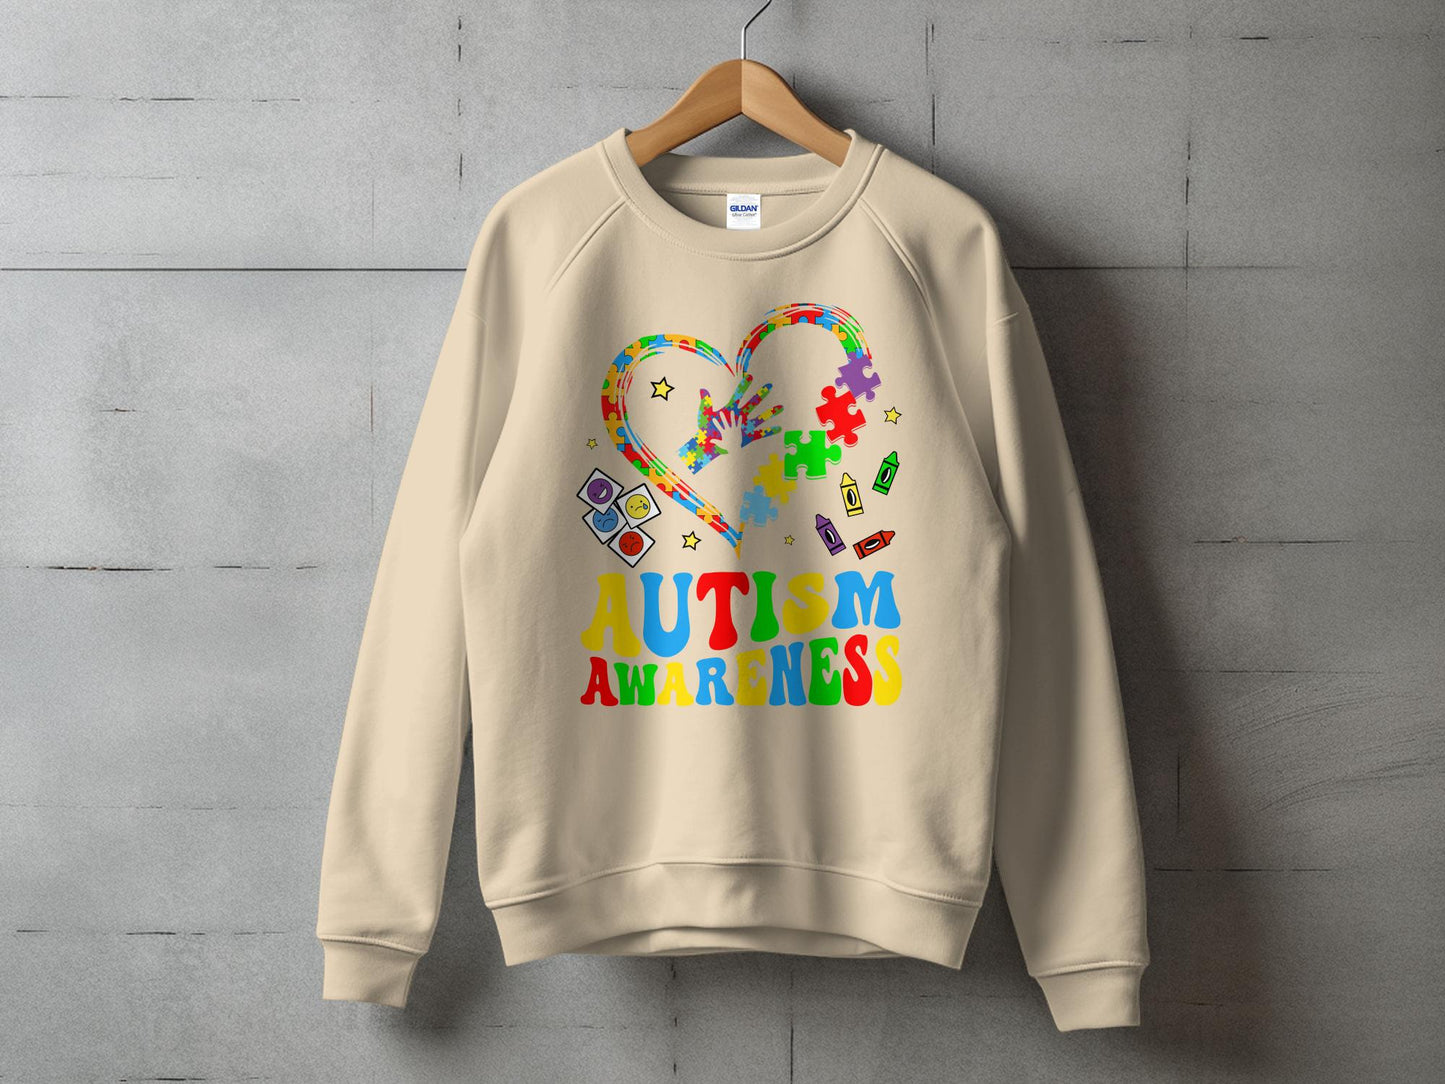 Autism Awareness- Heart